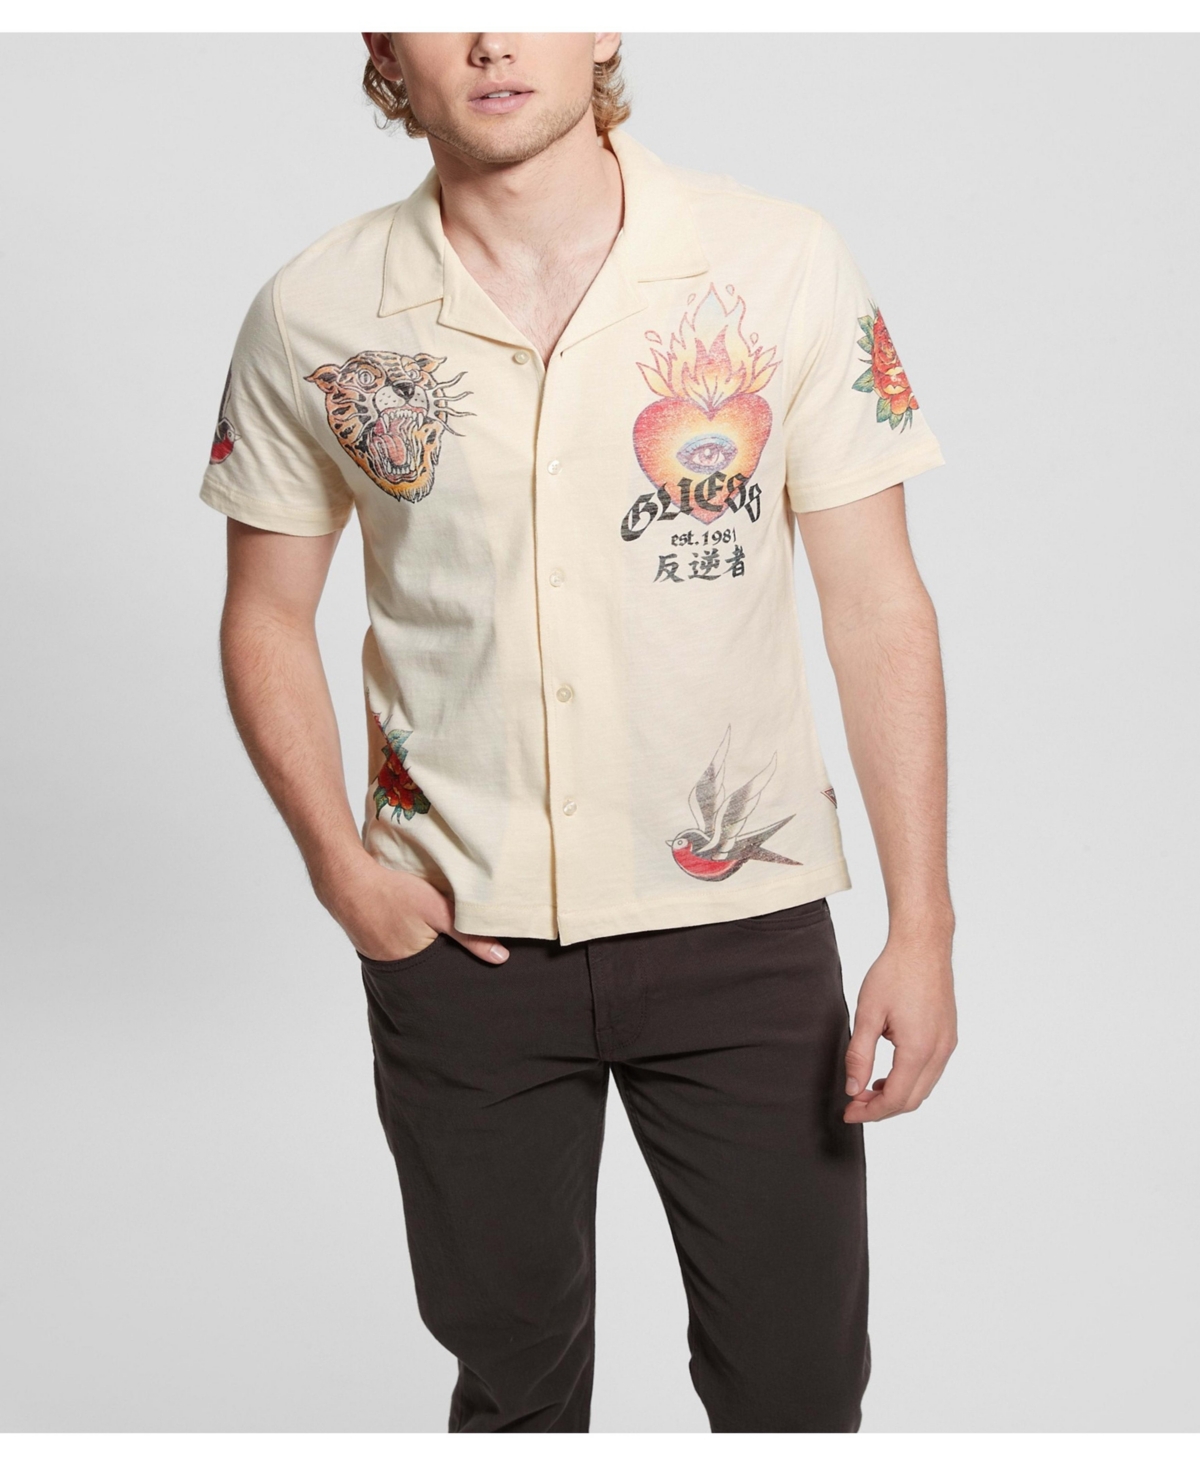 Guess Men's Cotton Knit Art Shirt In Tan